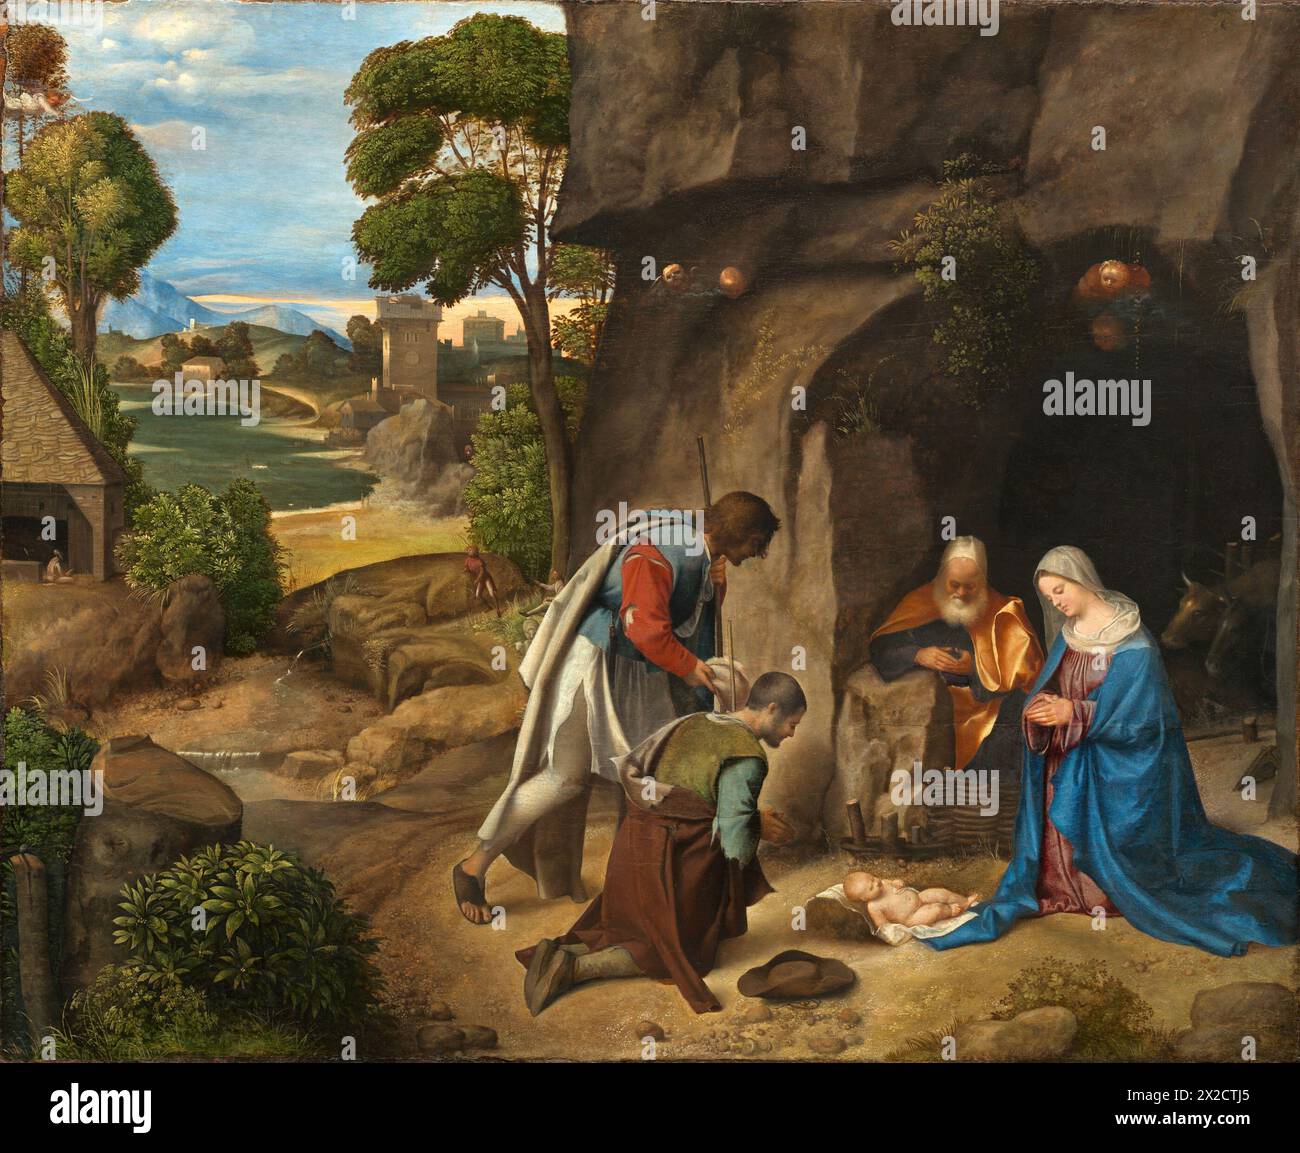 Pittura dell'Adorazione dei Pastori del pittore italiano Giorgione olio su tela capolavoro d'arte Foto Stock